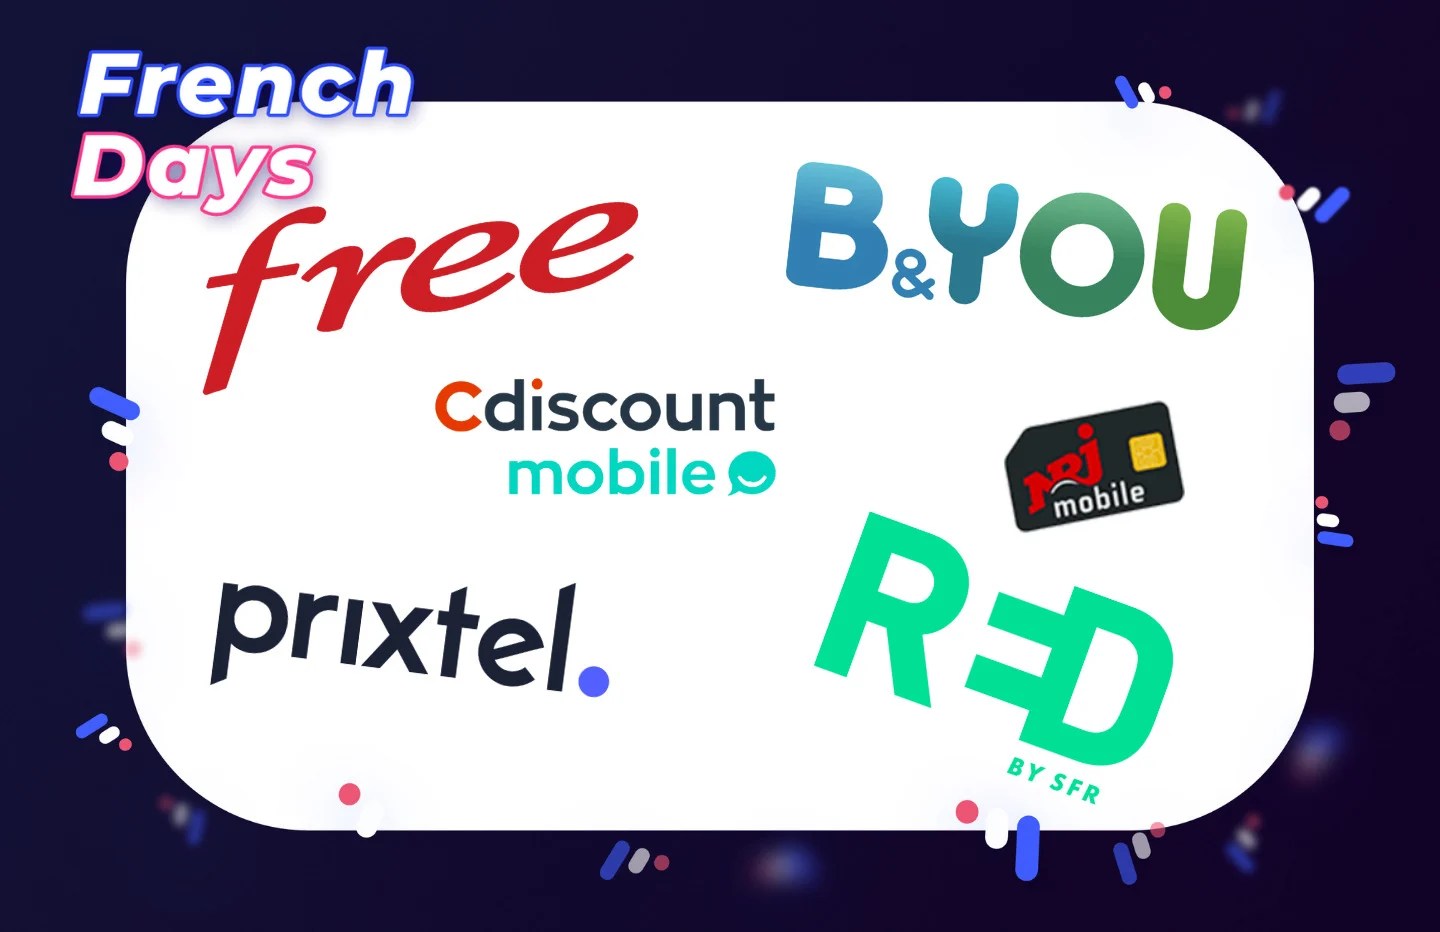 Forfait mobiles : les meilleures offres disponibles pendant les French Days